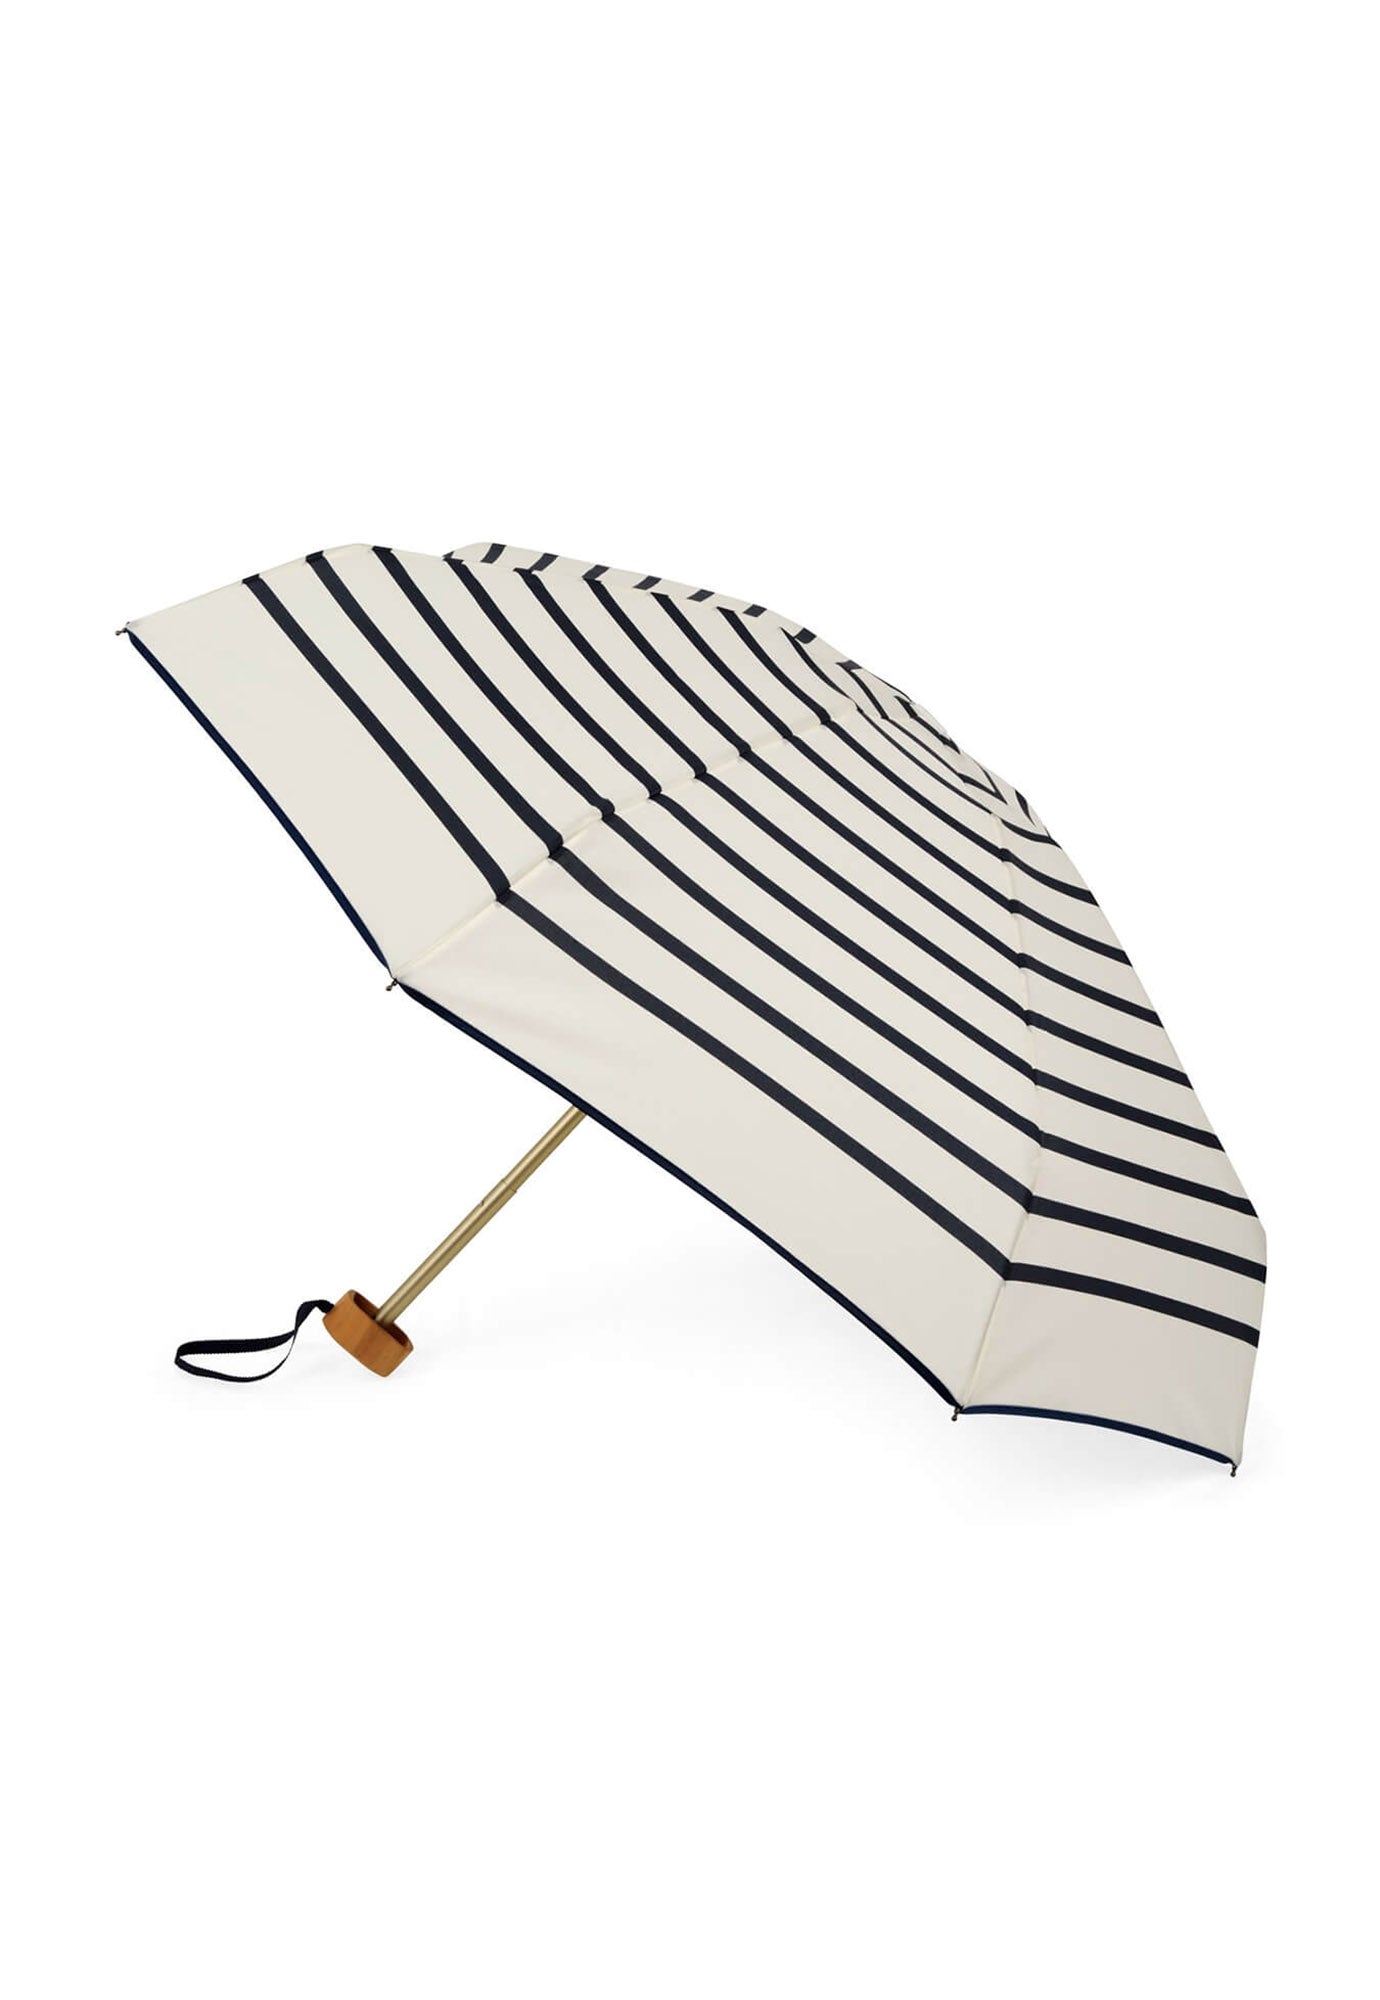 anatole - henri micro-umbrella - navy stripe